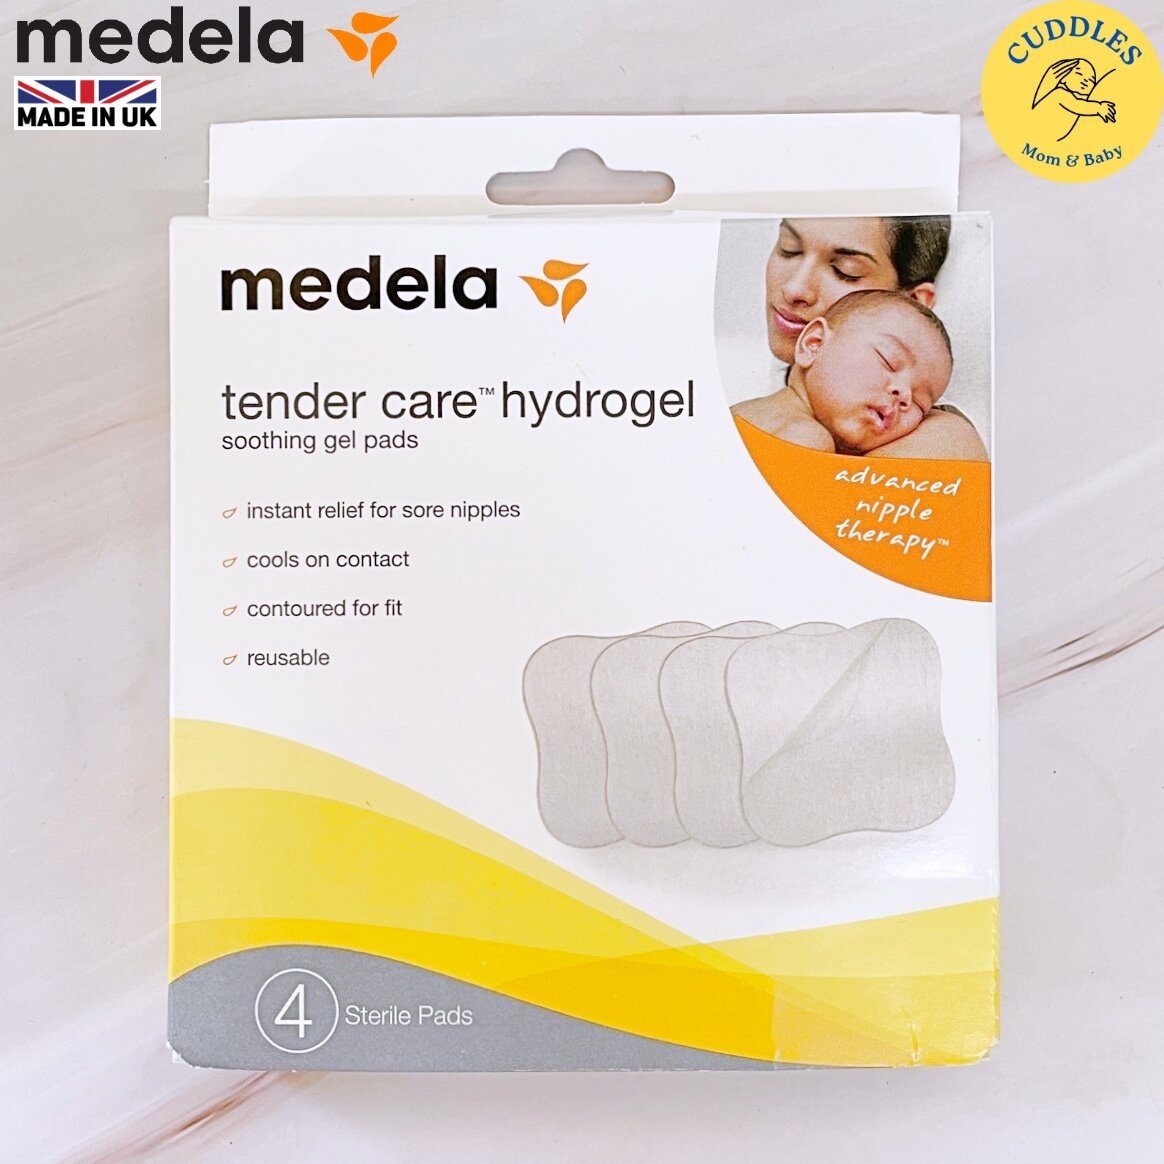 Medela Soothing Gel Pads for Breastfeeding, 4 Count Pack, Tender